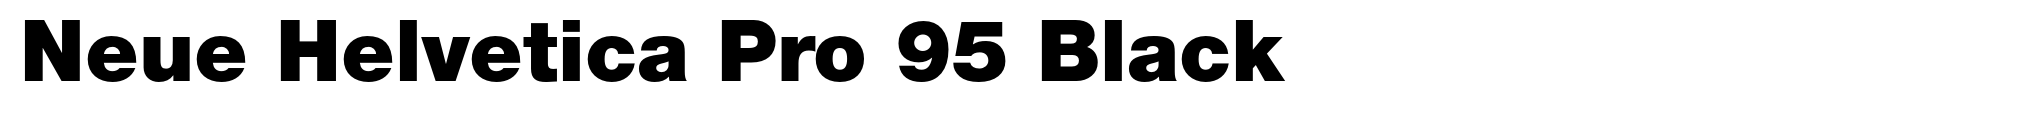 Neue Helvetica Pro 95 Black image